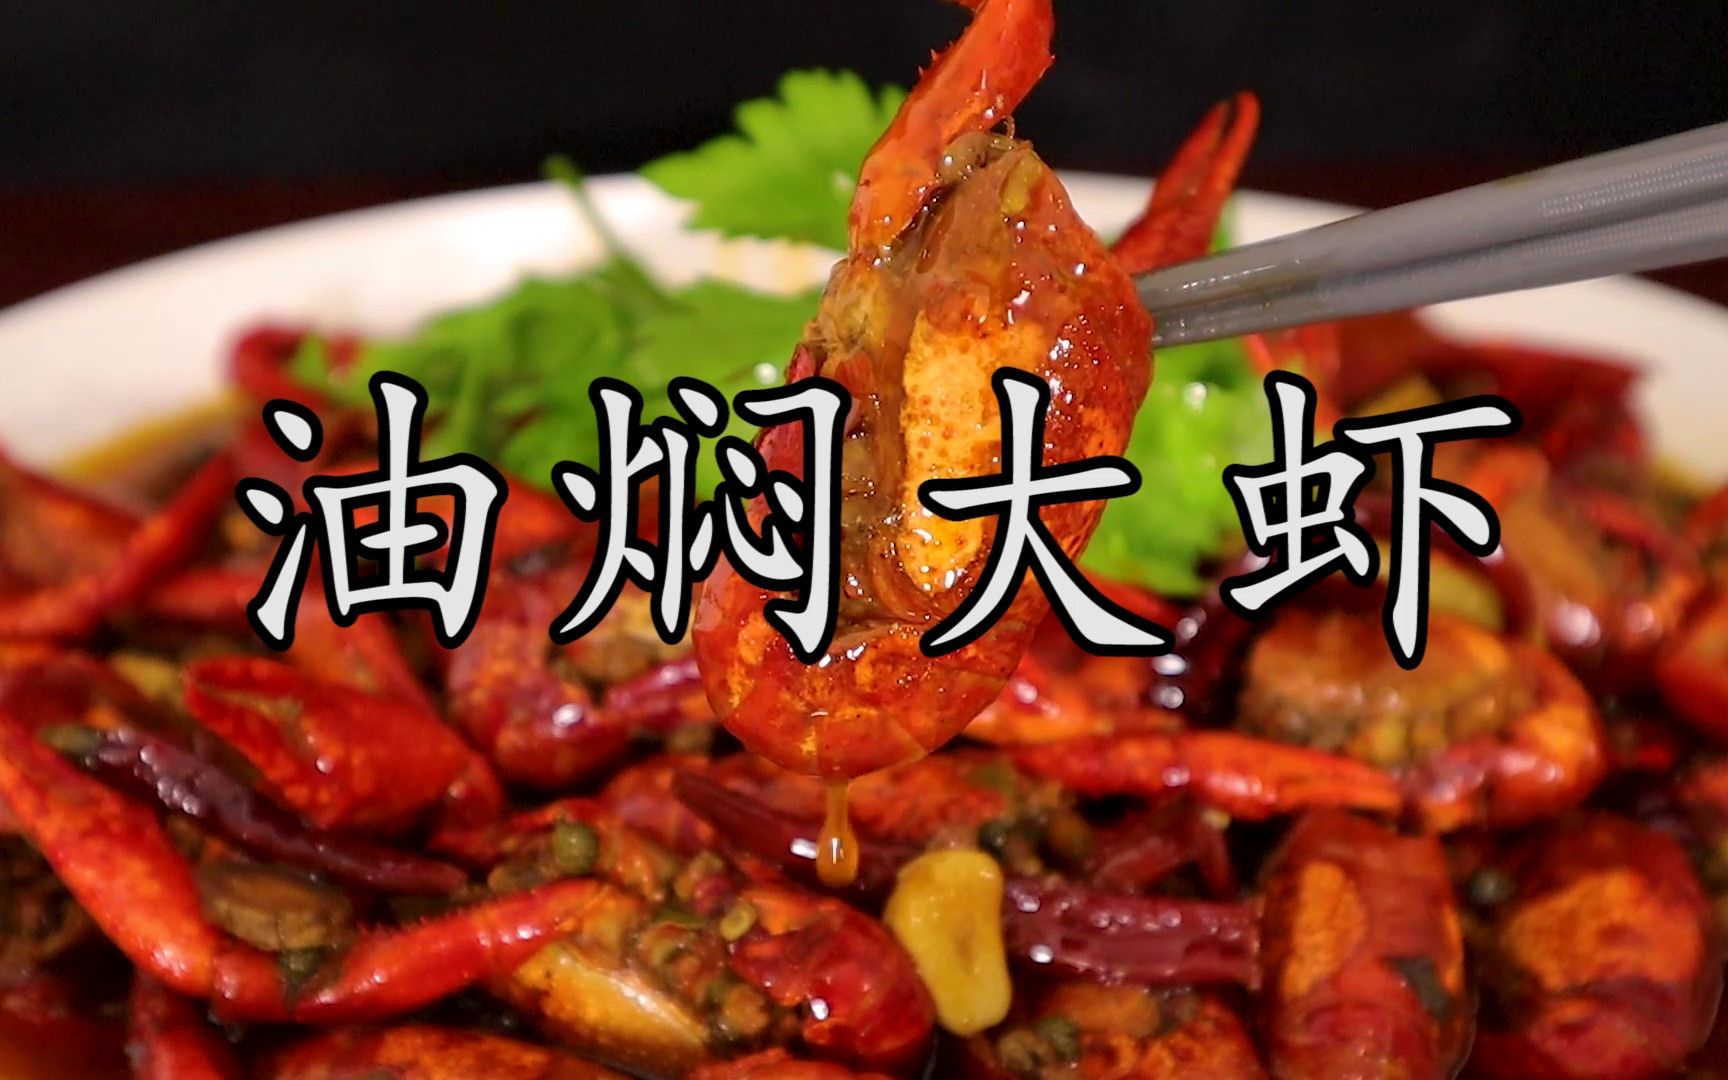 潜江餐馆至少198一份的#油焖大虾，其实50不到自家就能轻松做出和潜江餐馆一样的味道。#潜江小龙虾